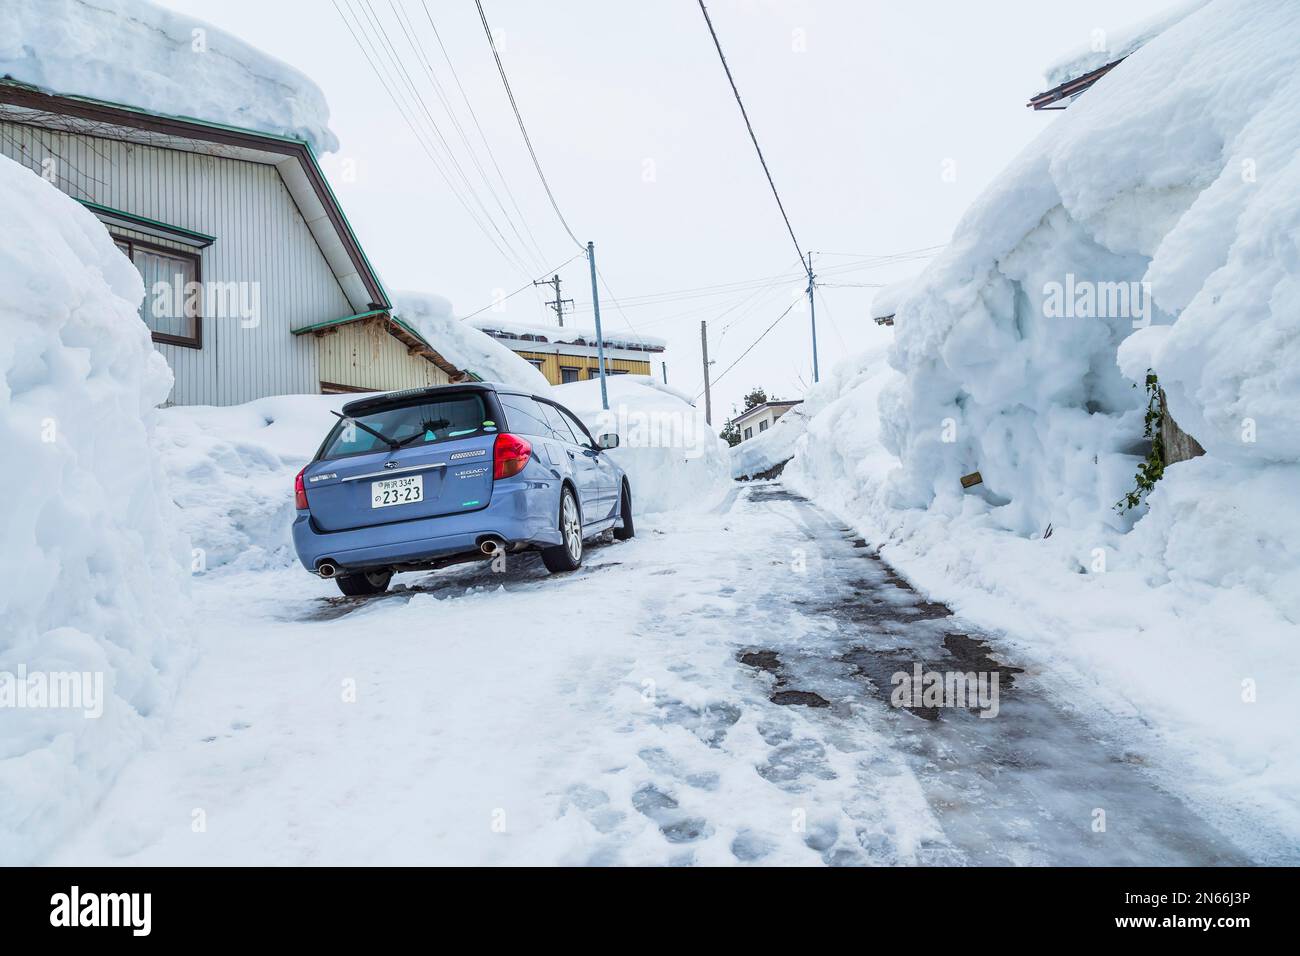 Mur de neige dans la rue, la vie dans un pays de neige, ville célèbre par la neige lourde, ville de Yokote, Akita, Tohoku, Japon, Asie de l'est, Asie Banque D'Images